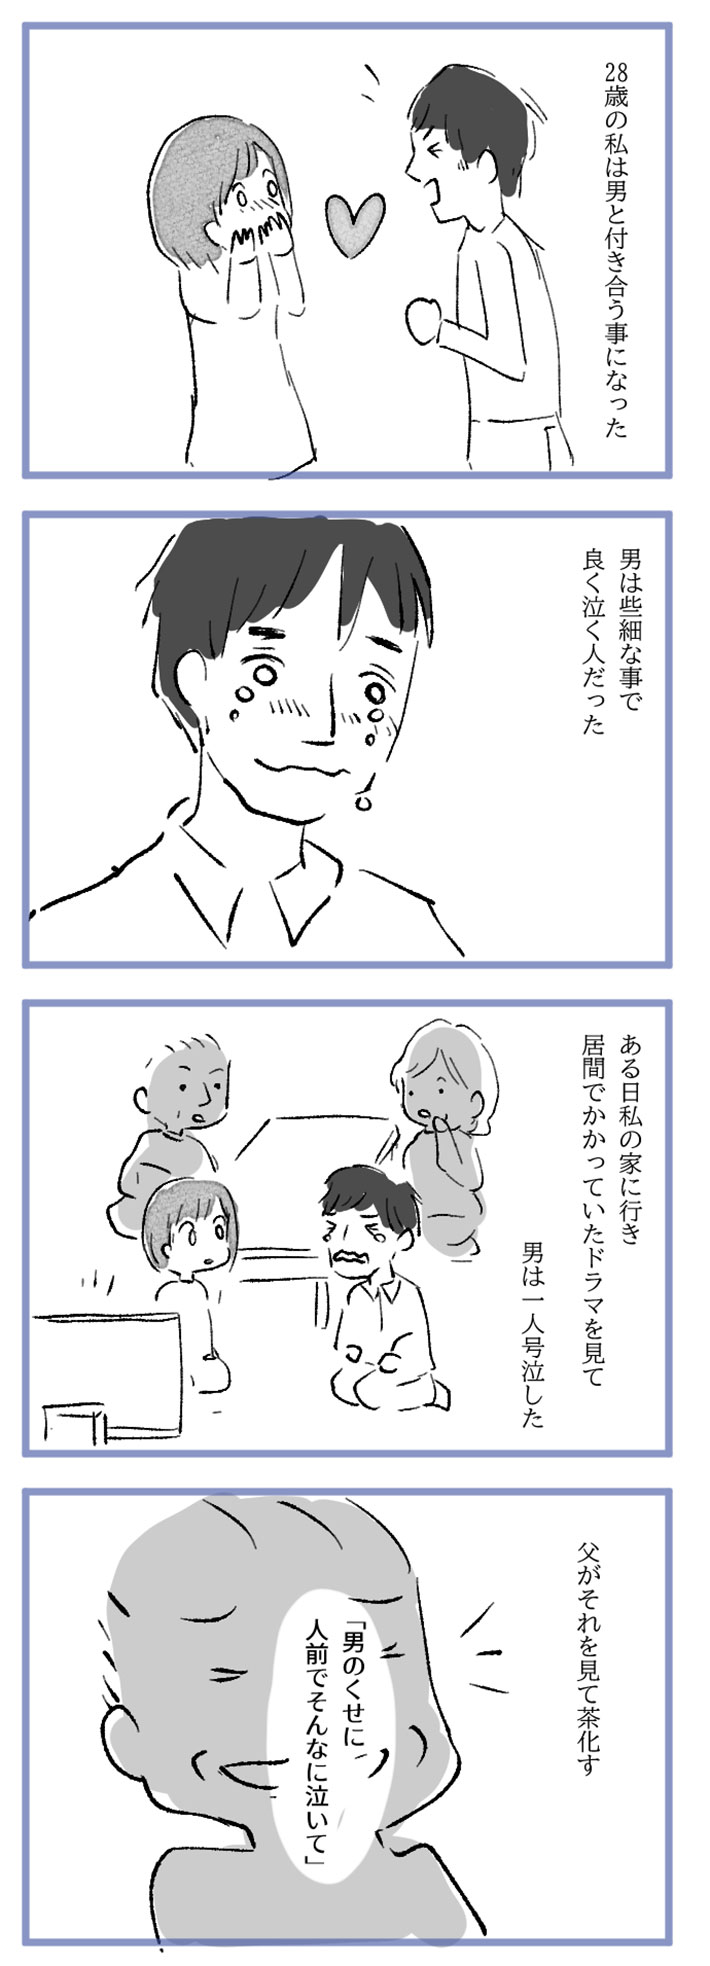 水谷アスさんの漫画作品5